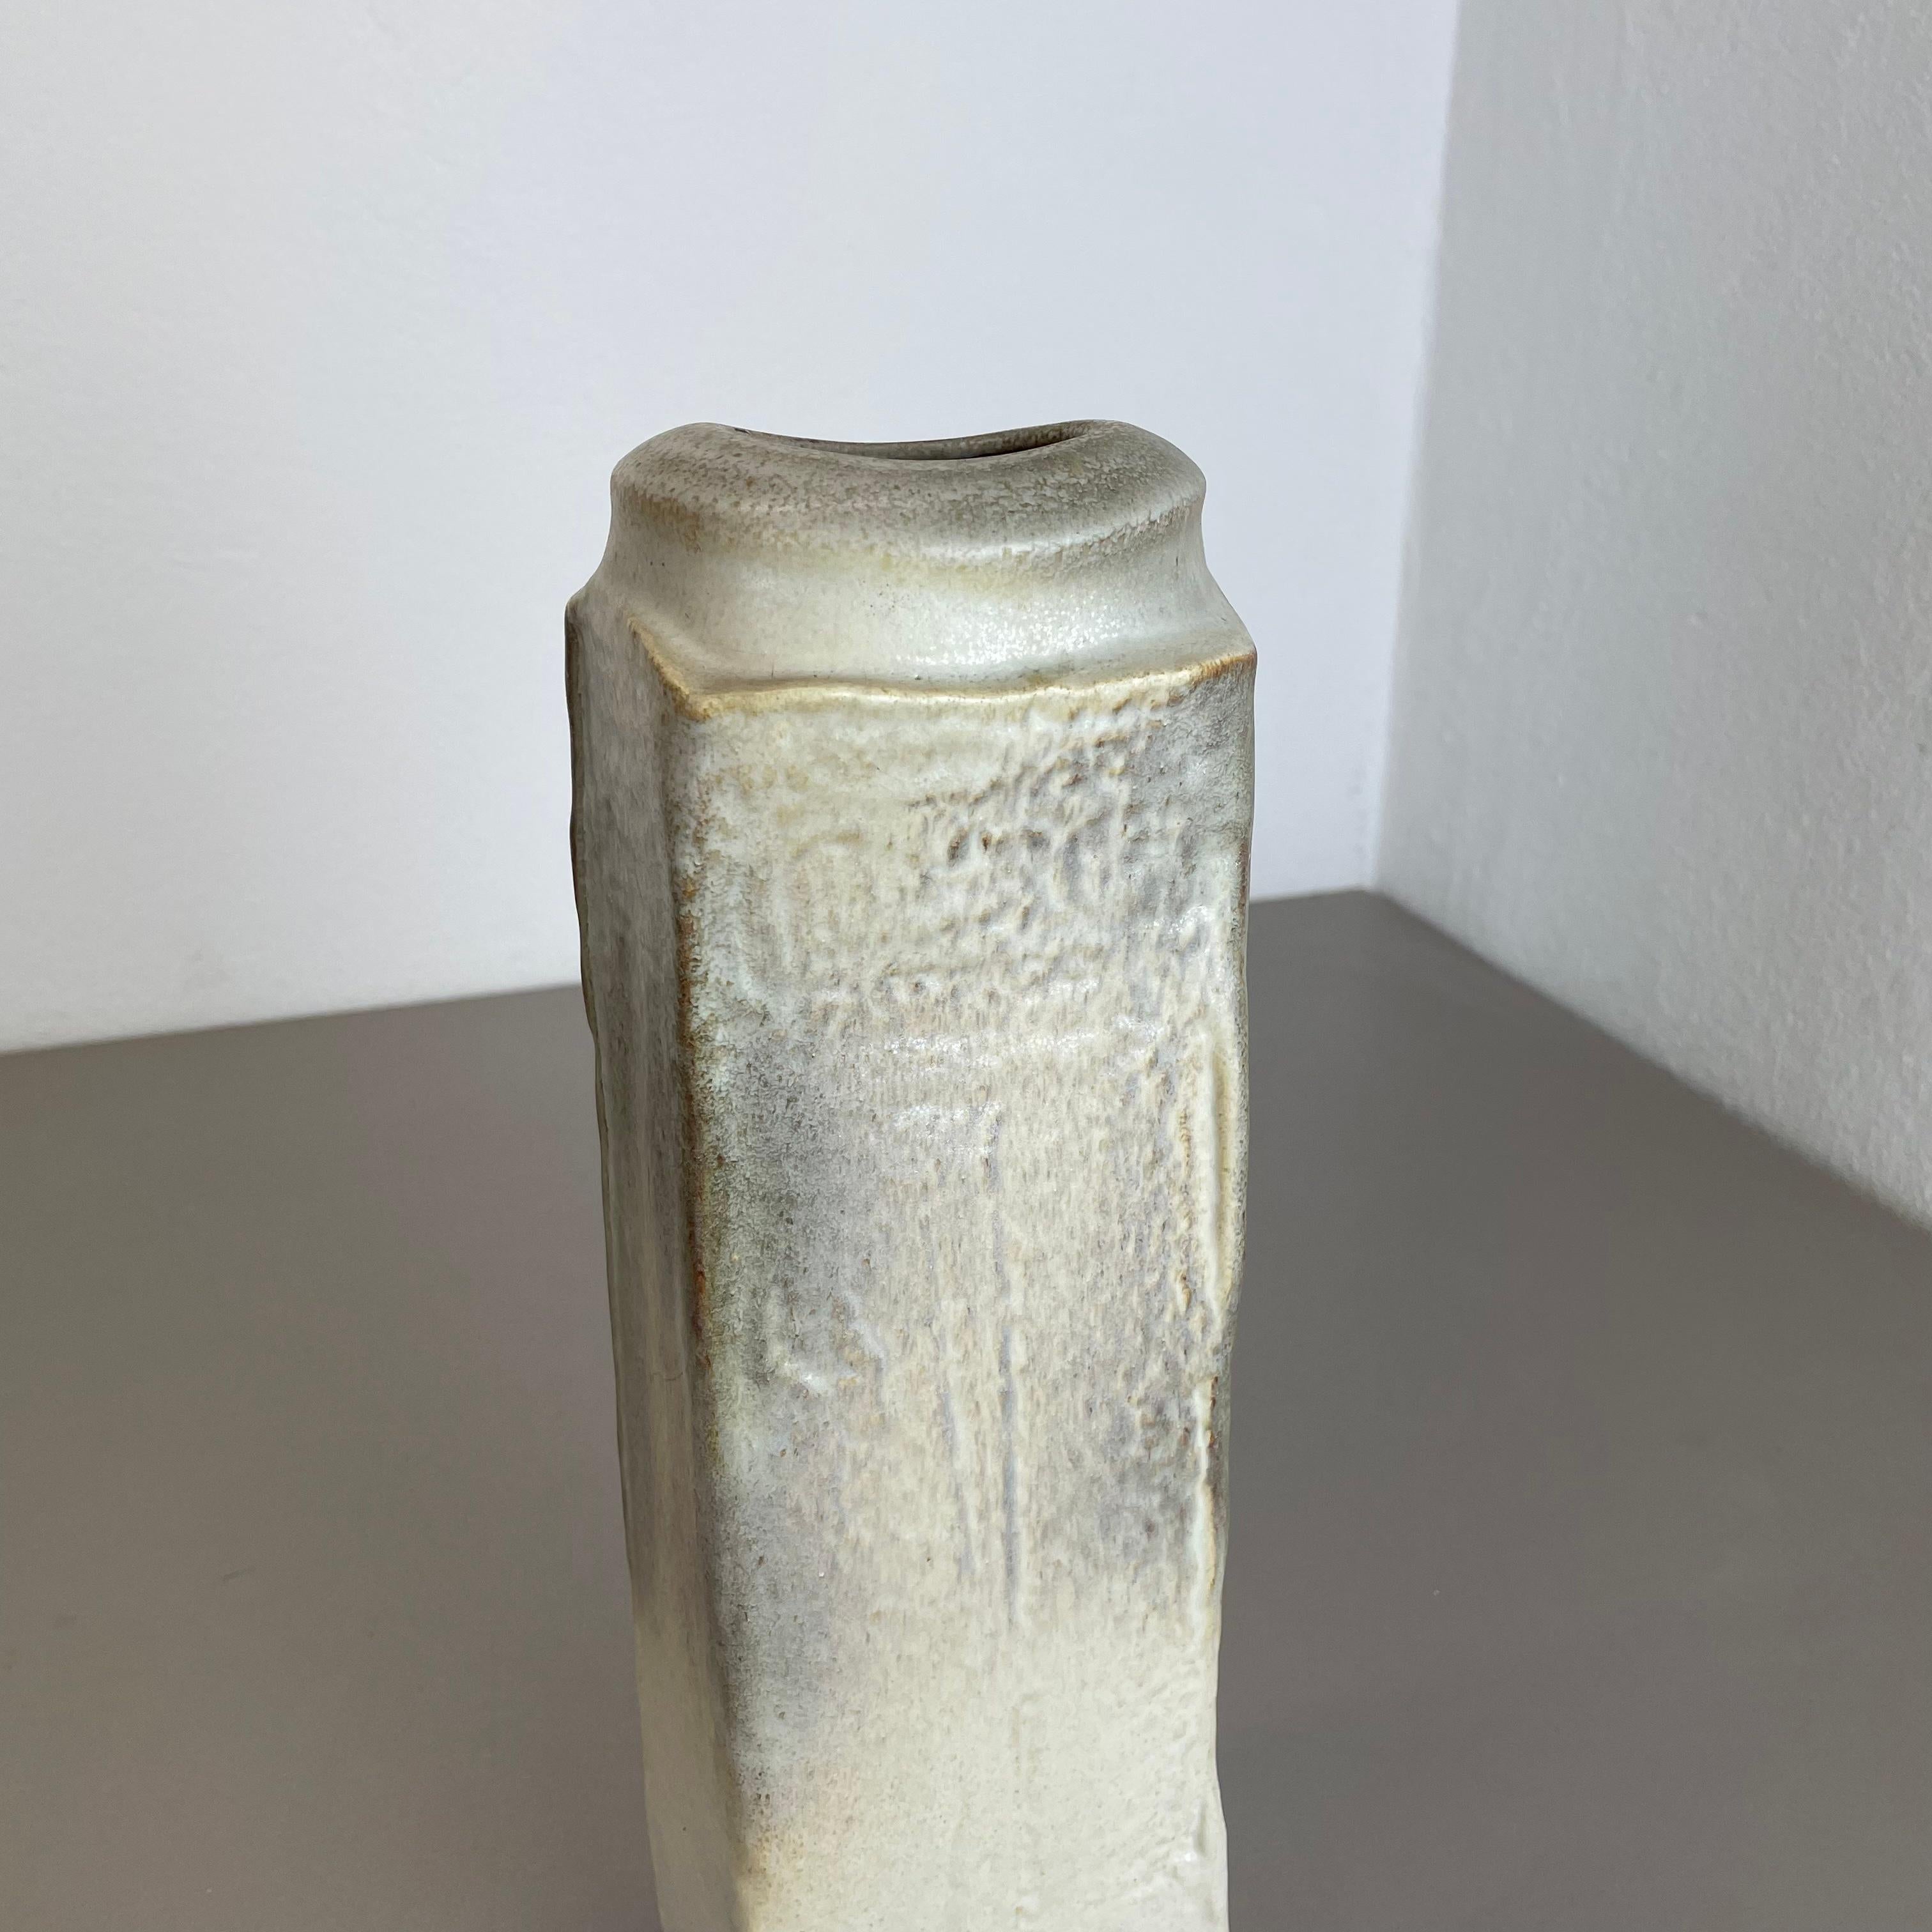 Huge 33cm ceramic Pottery Vase Object by Heiner Balzar for Steuler, Germany 1970 For Sale 6